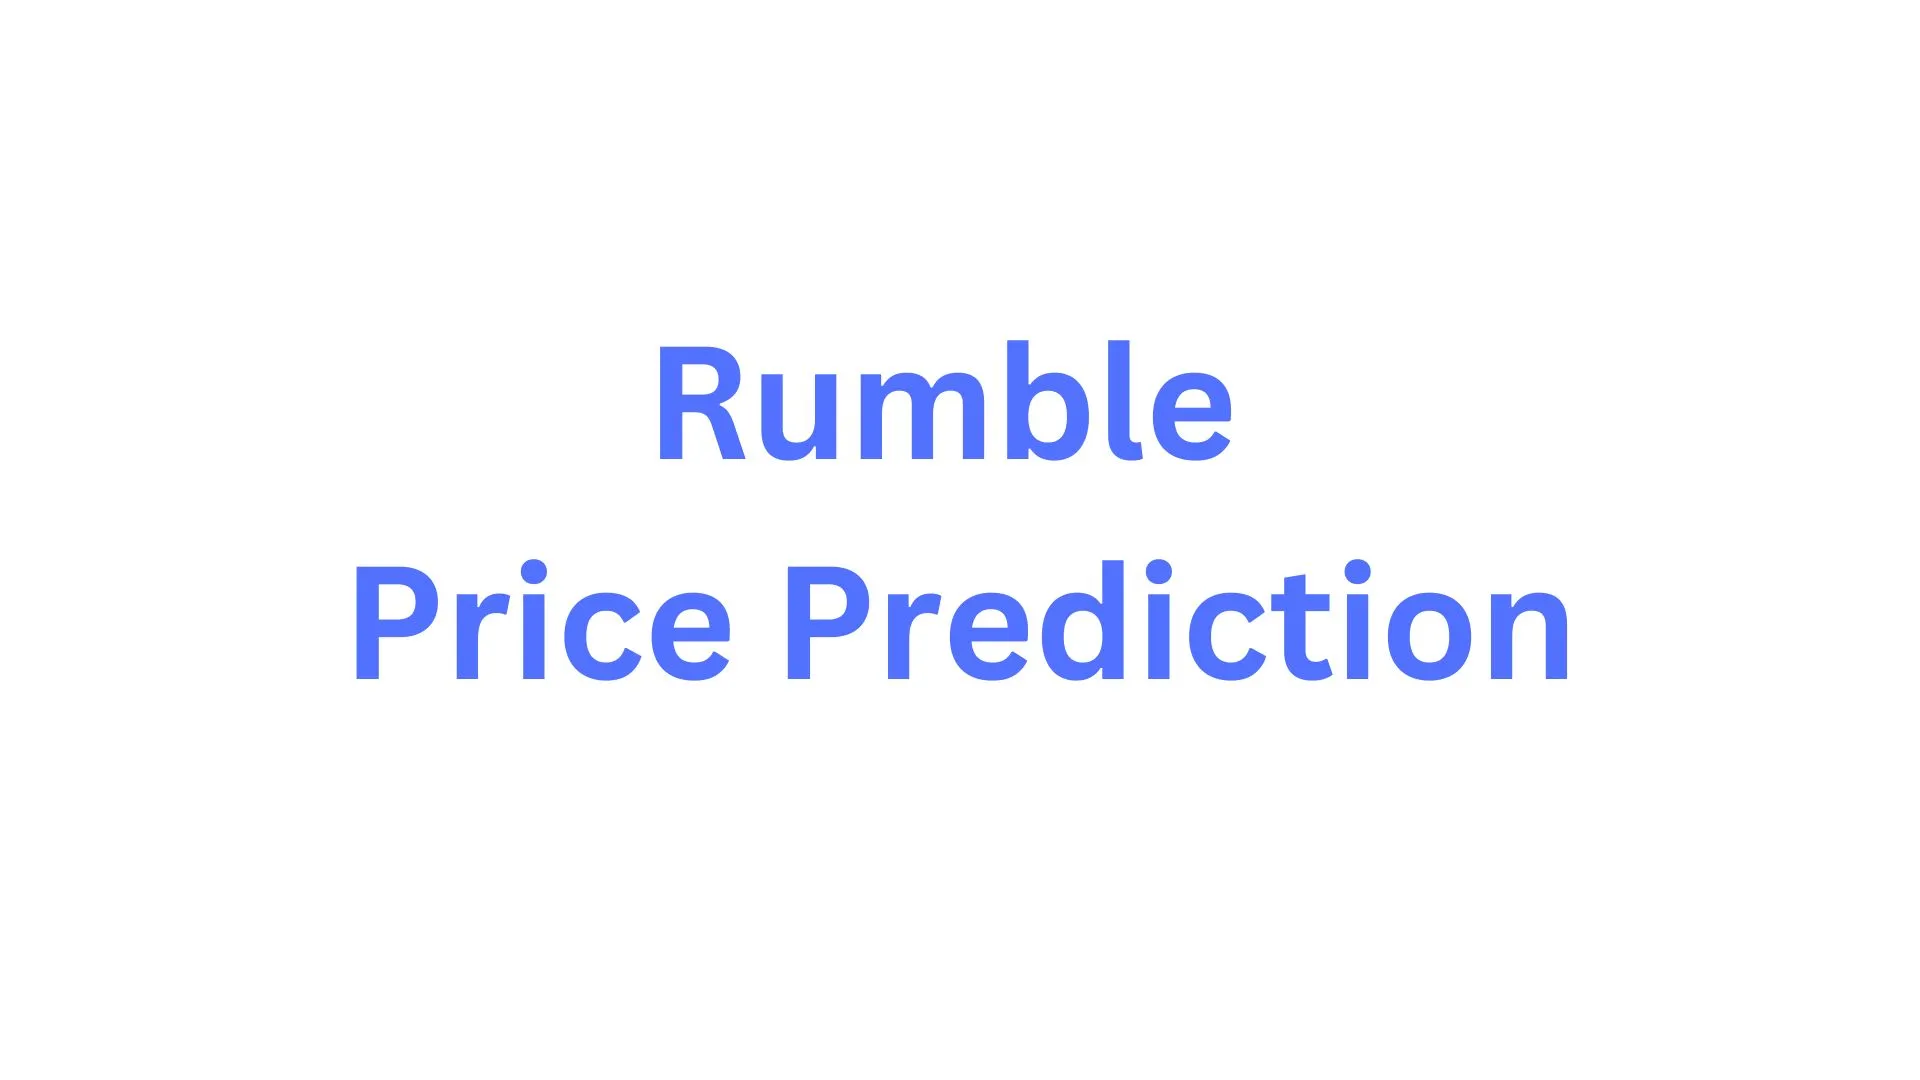 Rumble Price Prediction